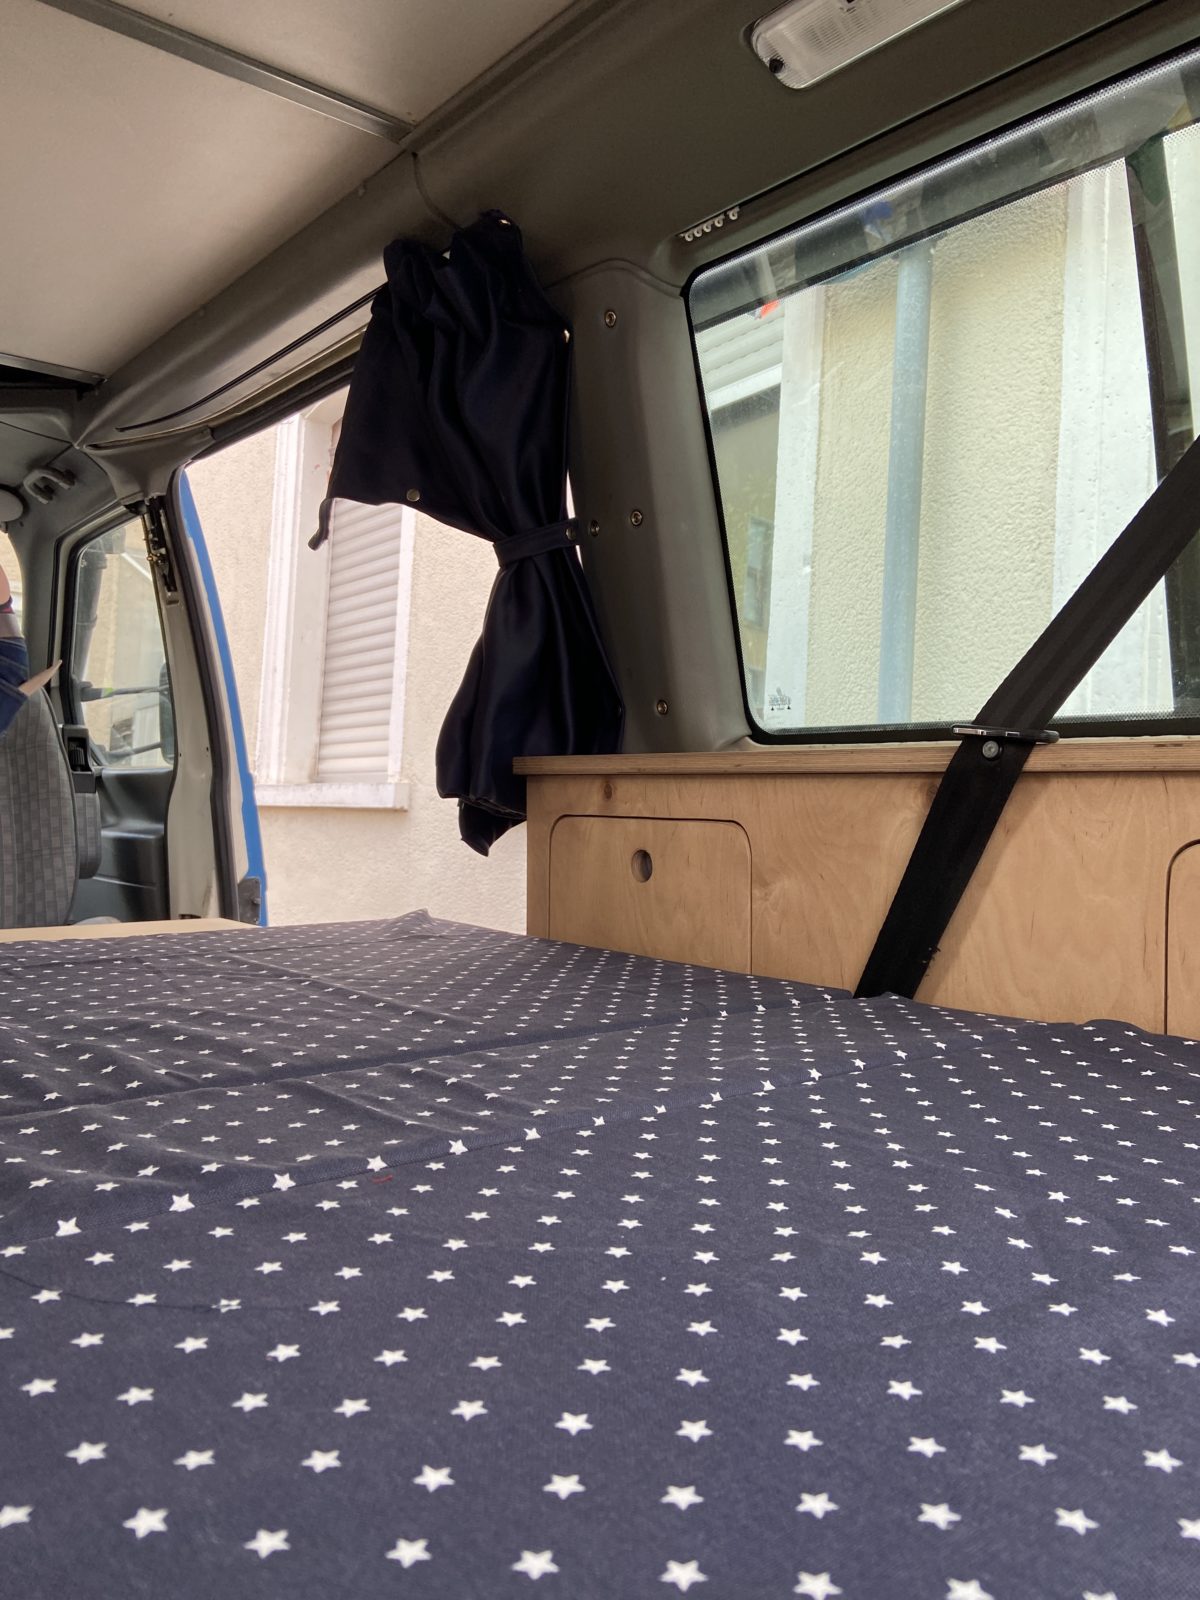 Busausbau: Eine Matratze für das Bett unten